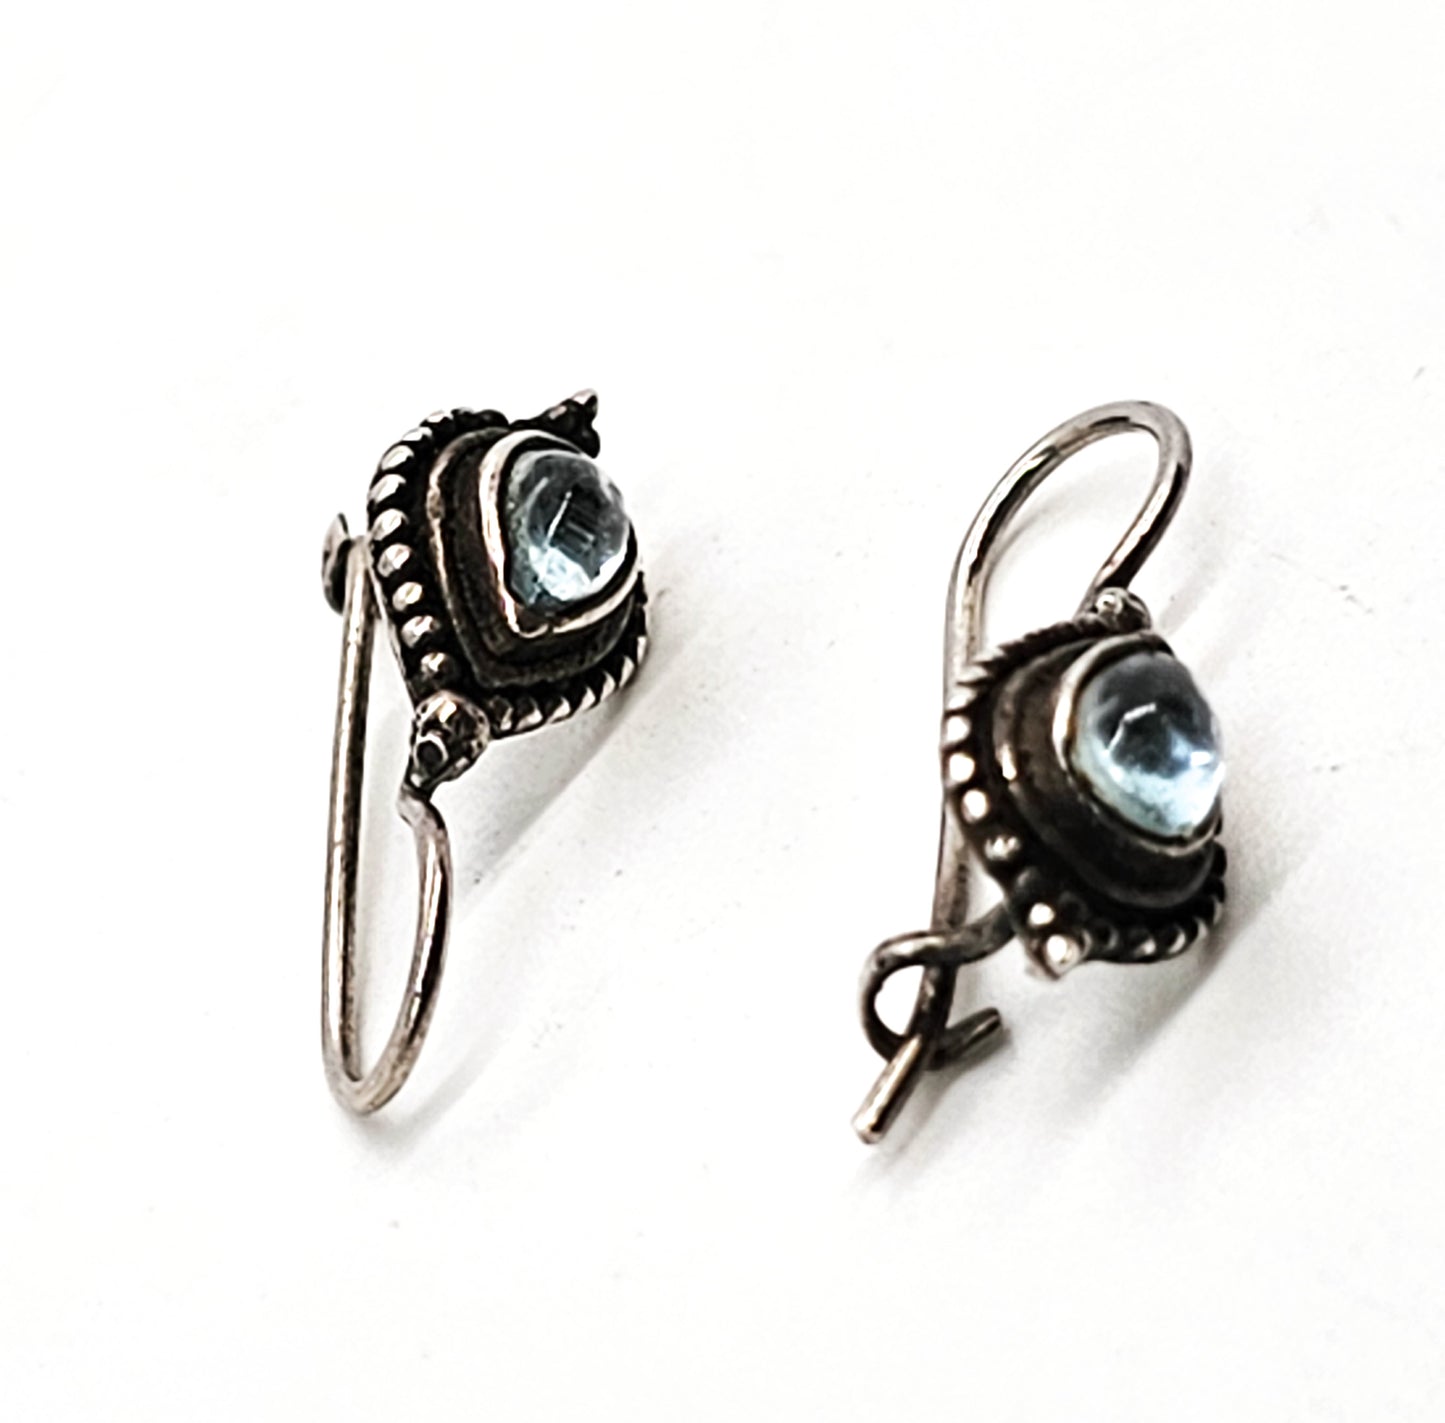 Marcella Cat's eye tear drop Bali Balinese vintage sterling silver earrings